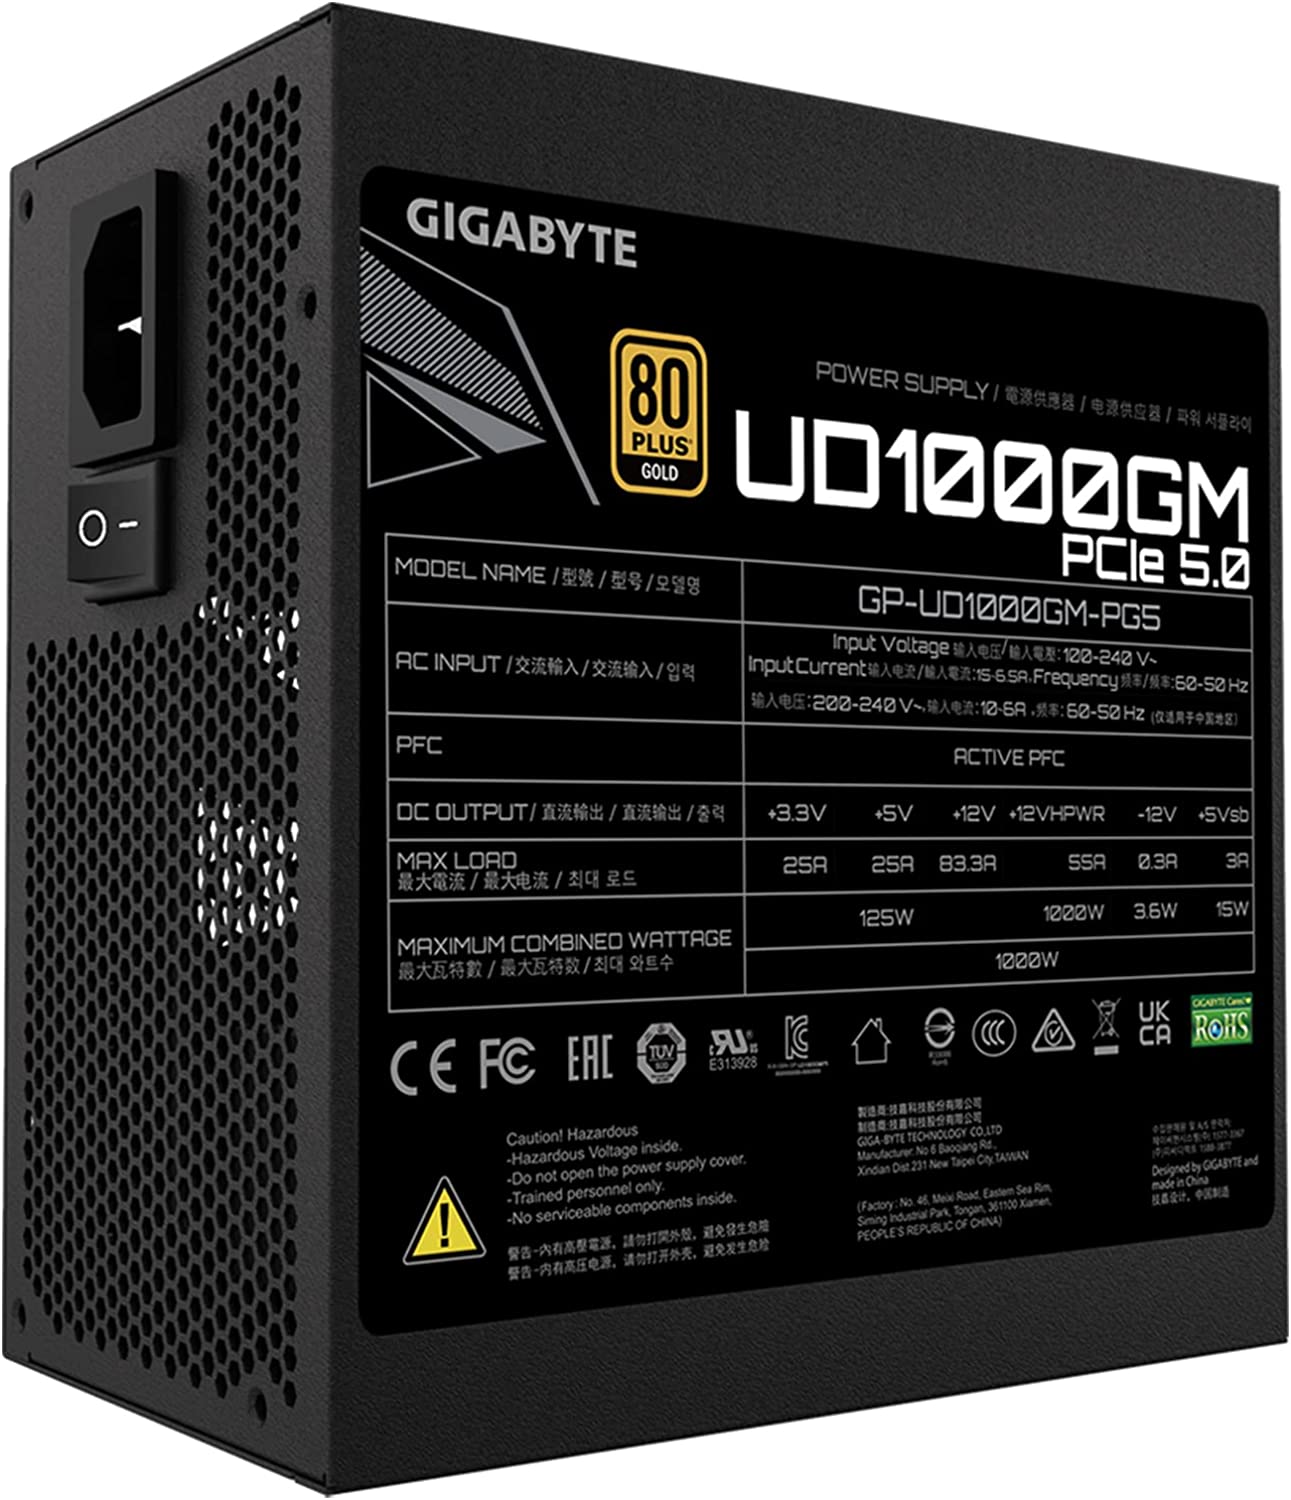 SMPS-GIGABYTE-1000W-(GP-UD1000GM)-PG5